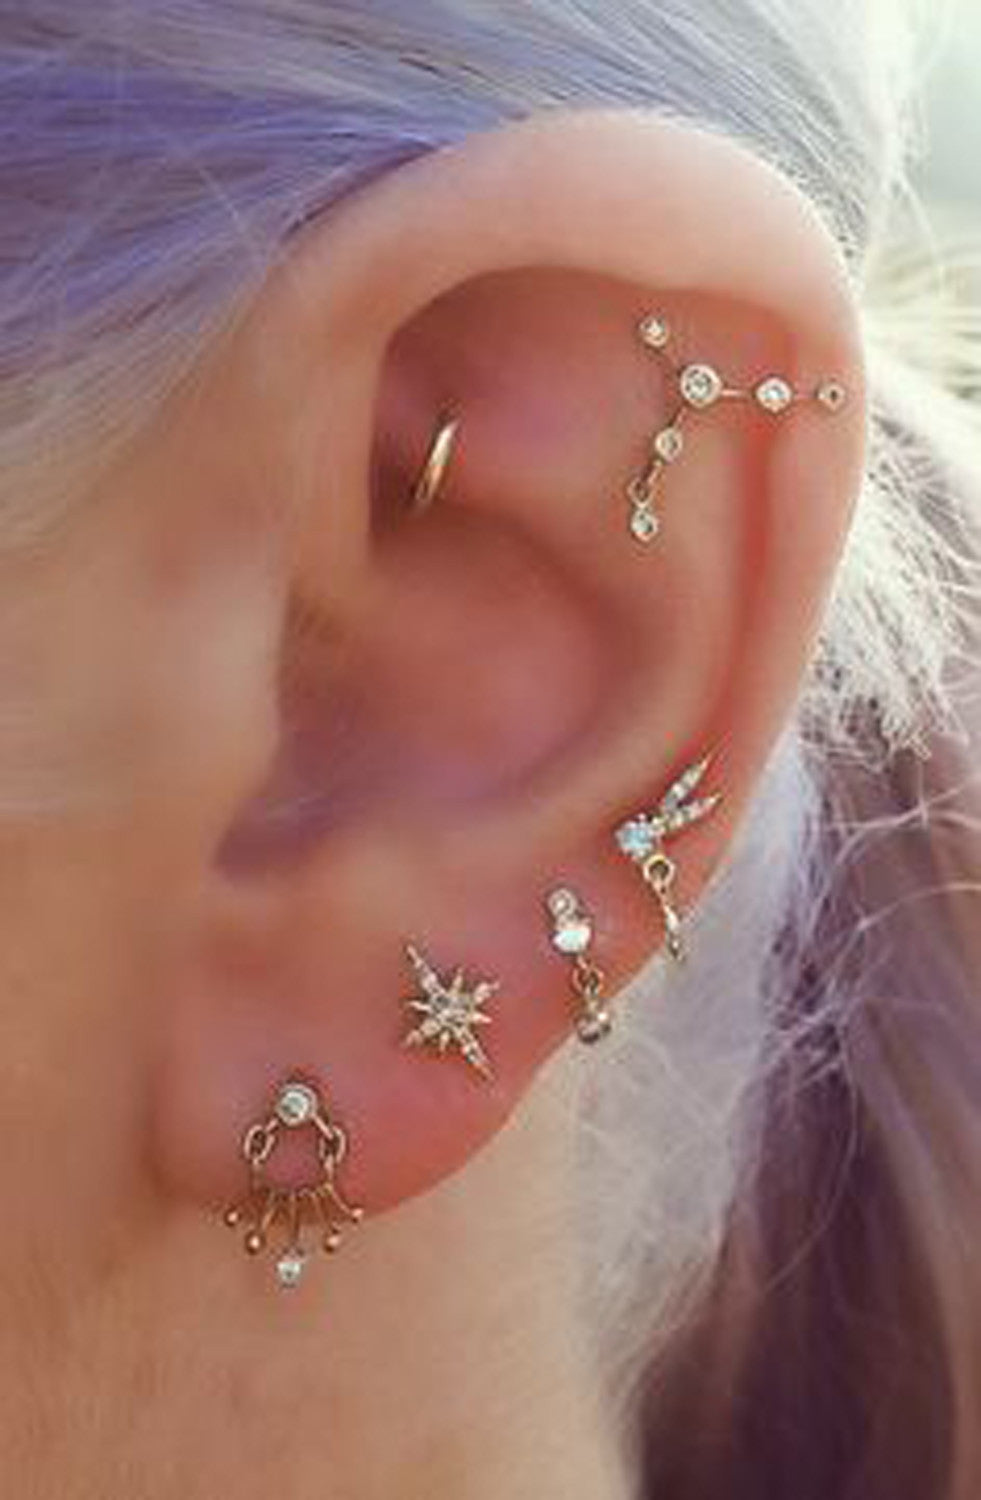 Ear Piercing Ideas - Constellation Piercing - Daith Piercing Jewelry - Gold Earrings 